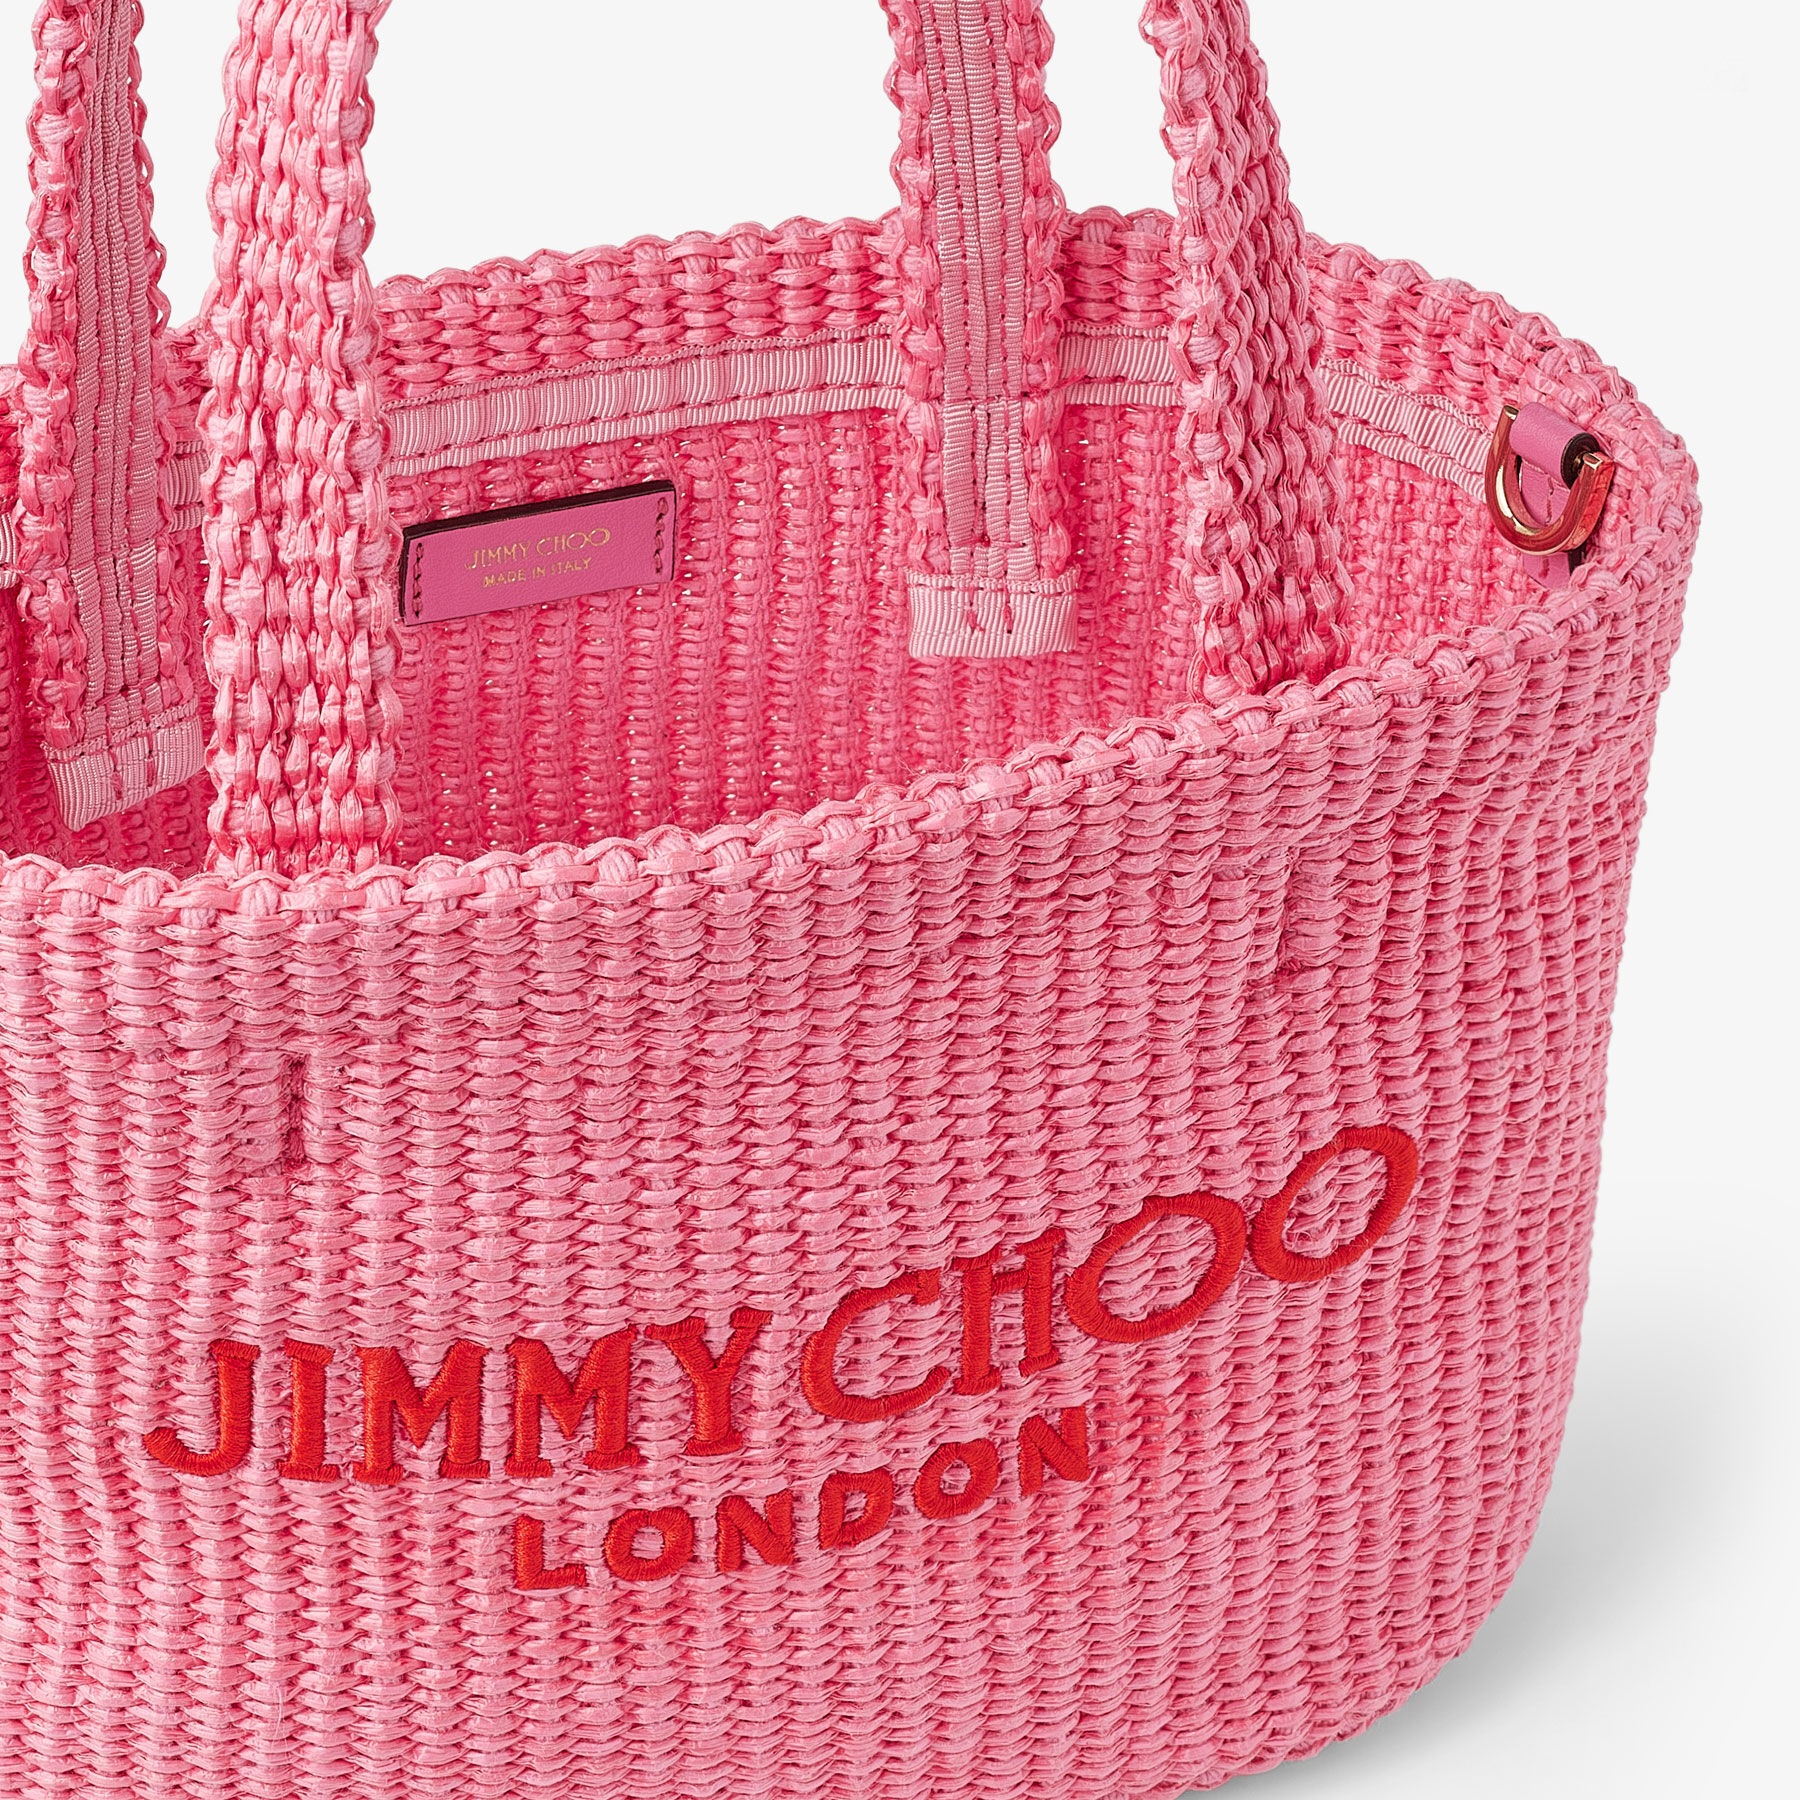 Beach Tote E/W Mini
Candy Pink Raffia Embroidered Mini Tote Bag - 4